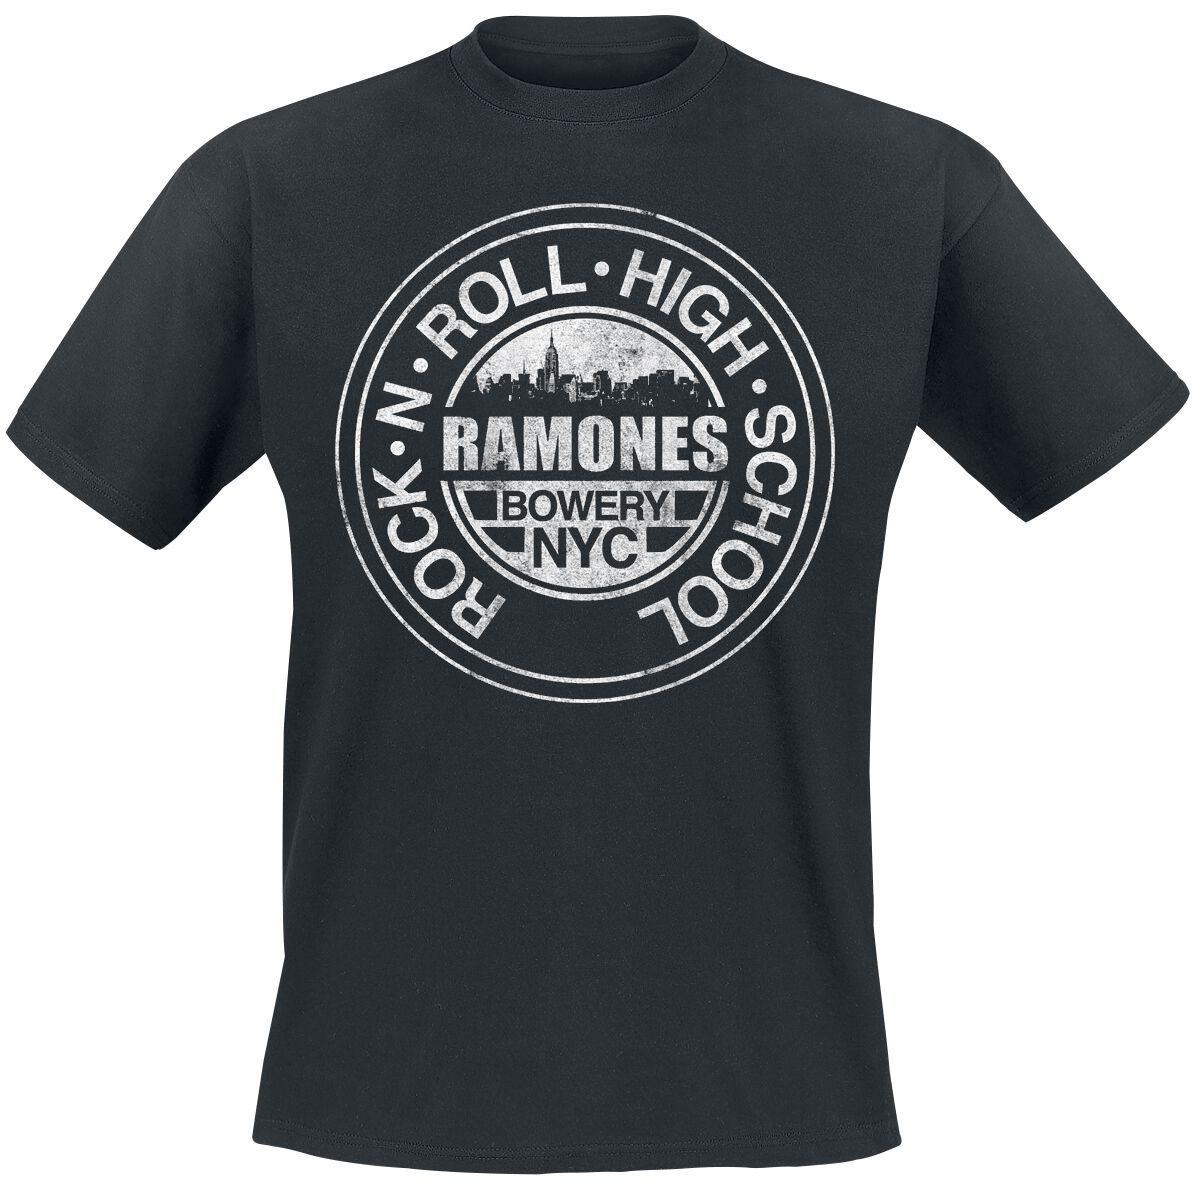 Ramones T-Shirt - Bowery NYC - L bis 5XL - für Männer - Größe XXL - schwarz  - Lizenziertes Merchandise!